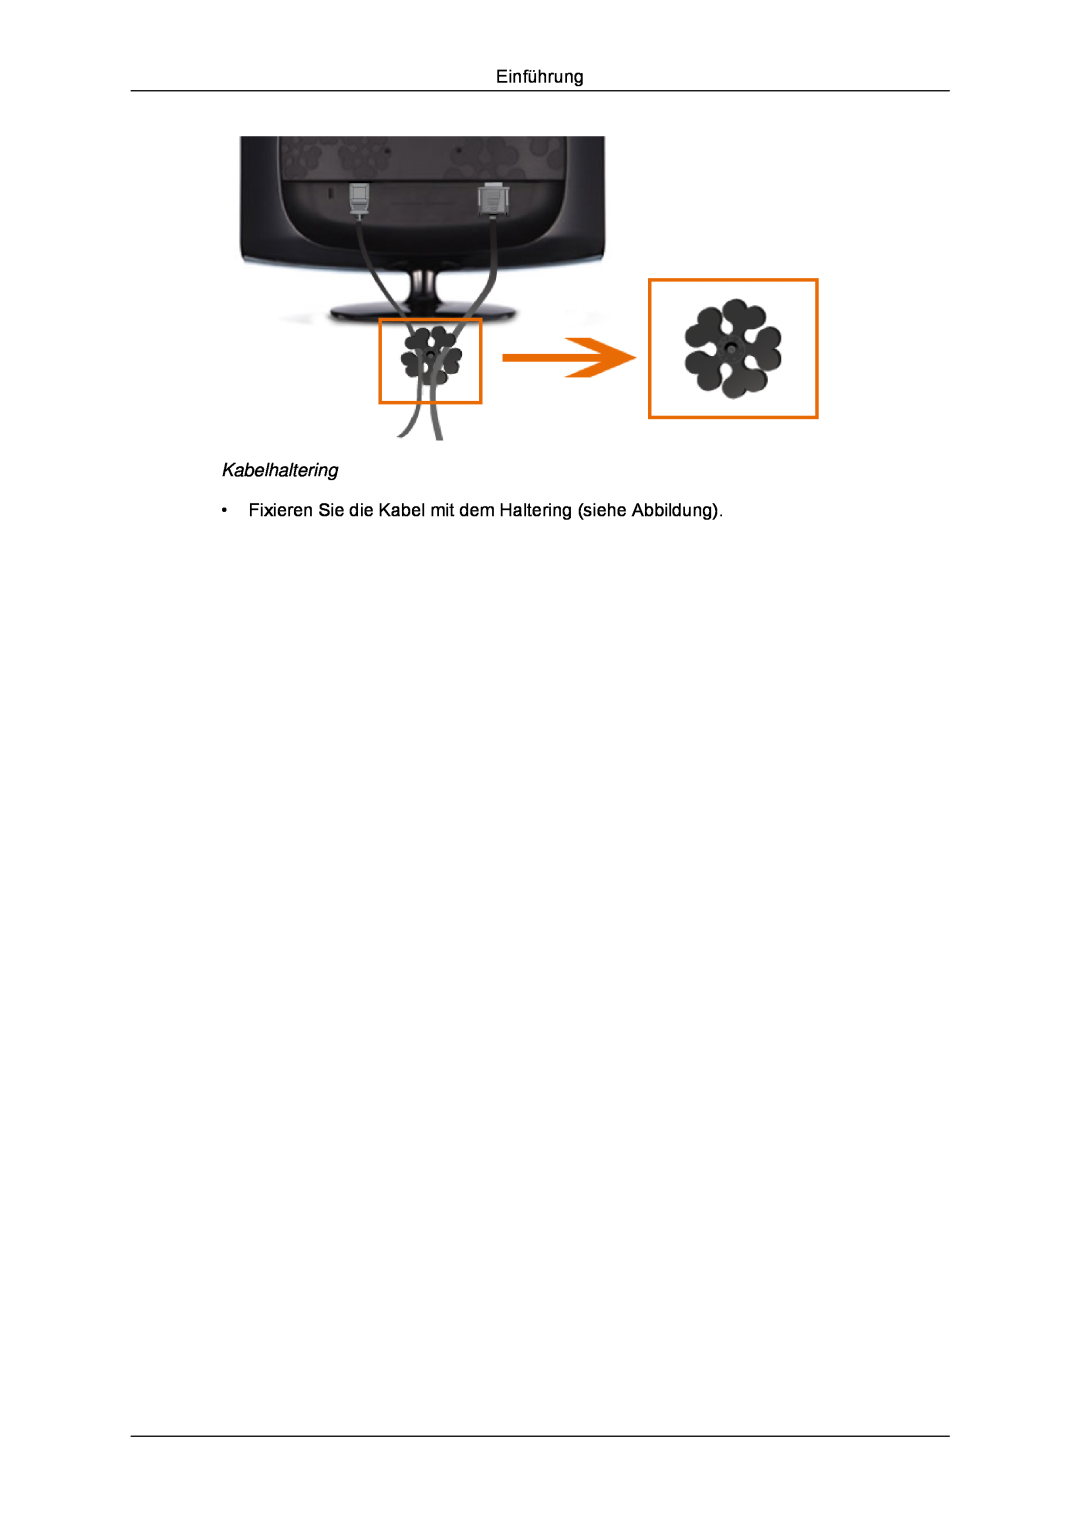 Samsung LS24CMKKFV/EN, LS24CMKKFVA/EN Kabelhaltering, Einführung, Fixieren Sie die Kabel mit dem Haltering siehe Abbildung 